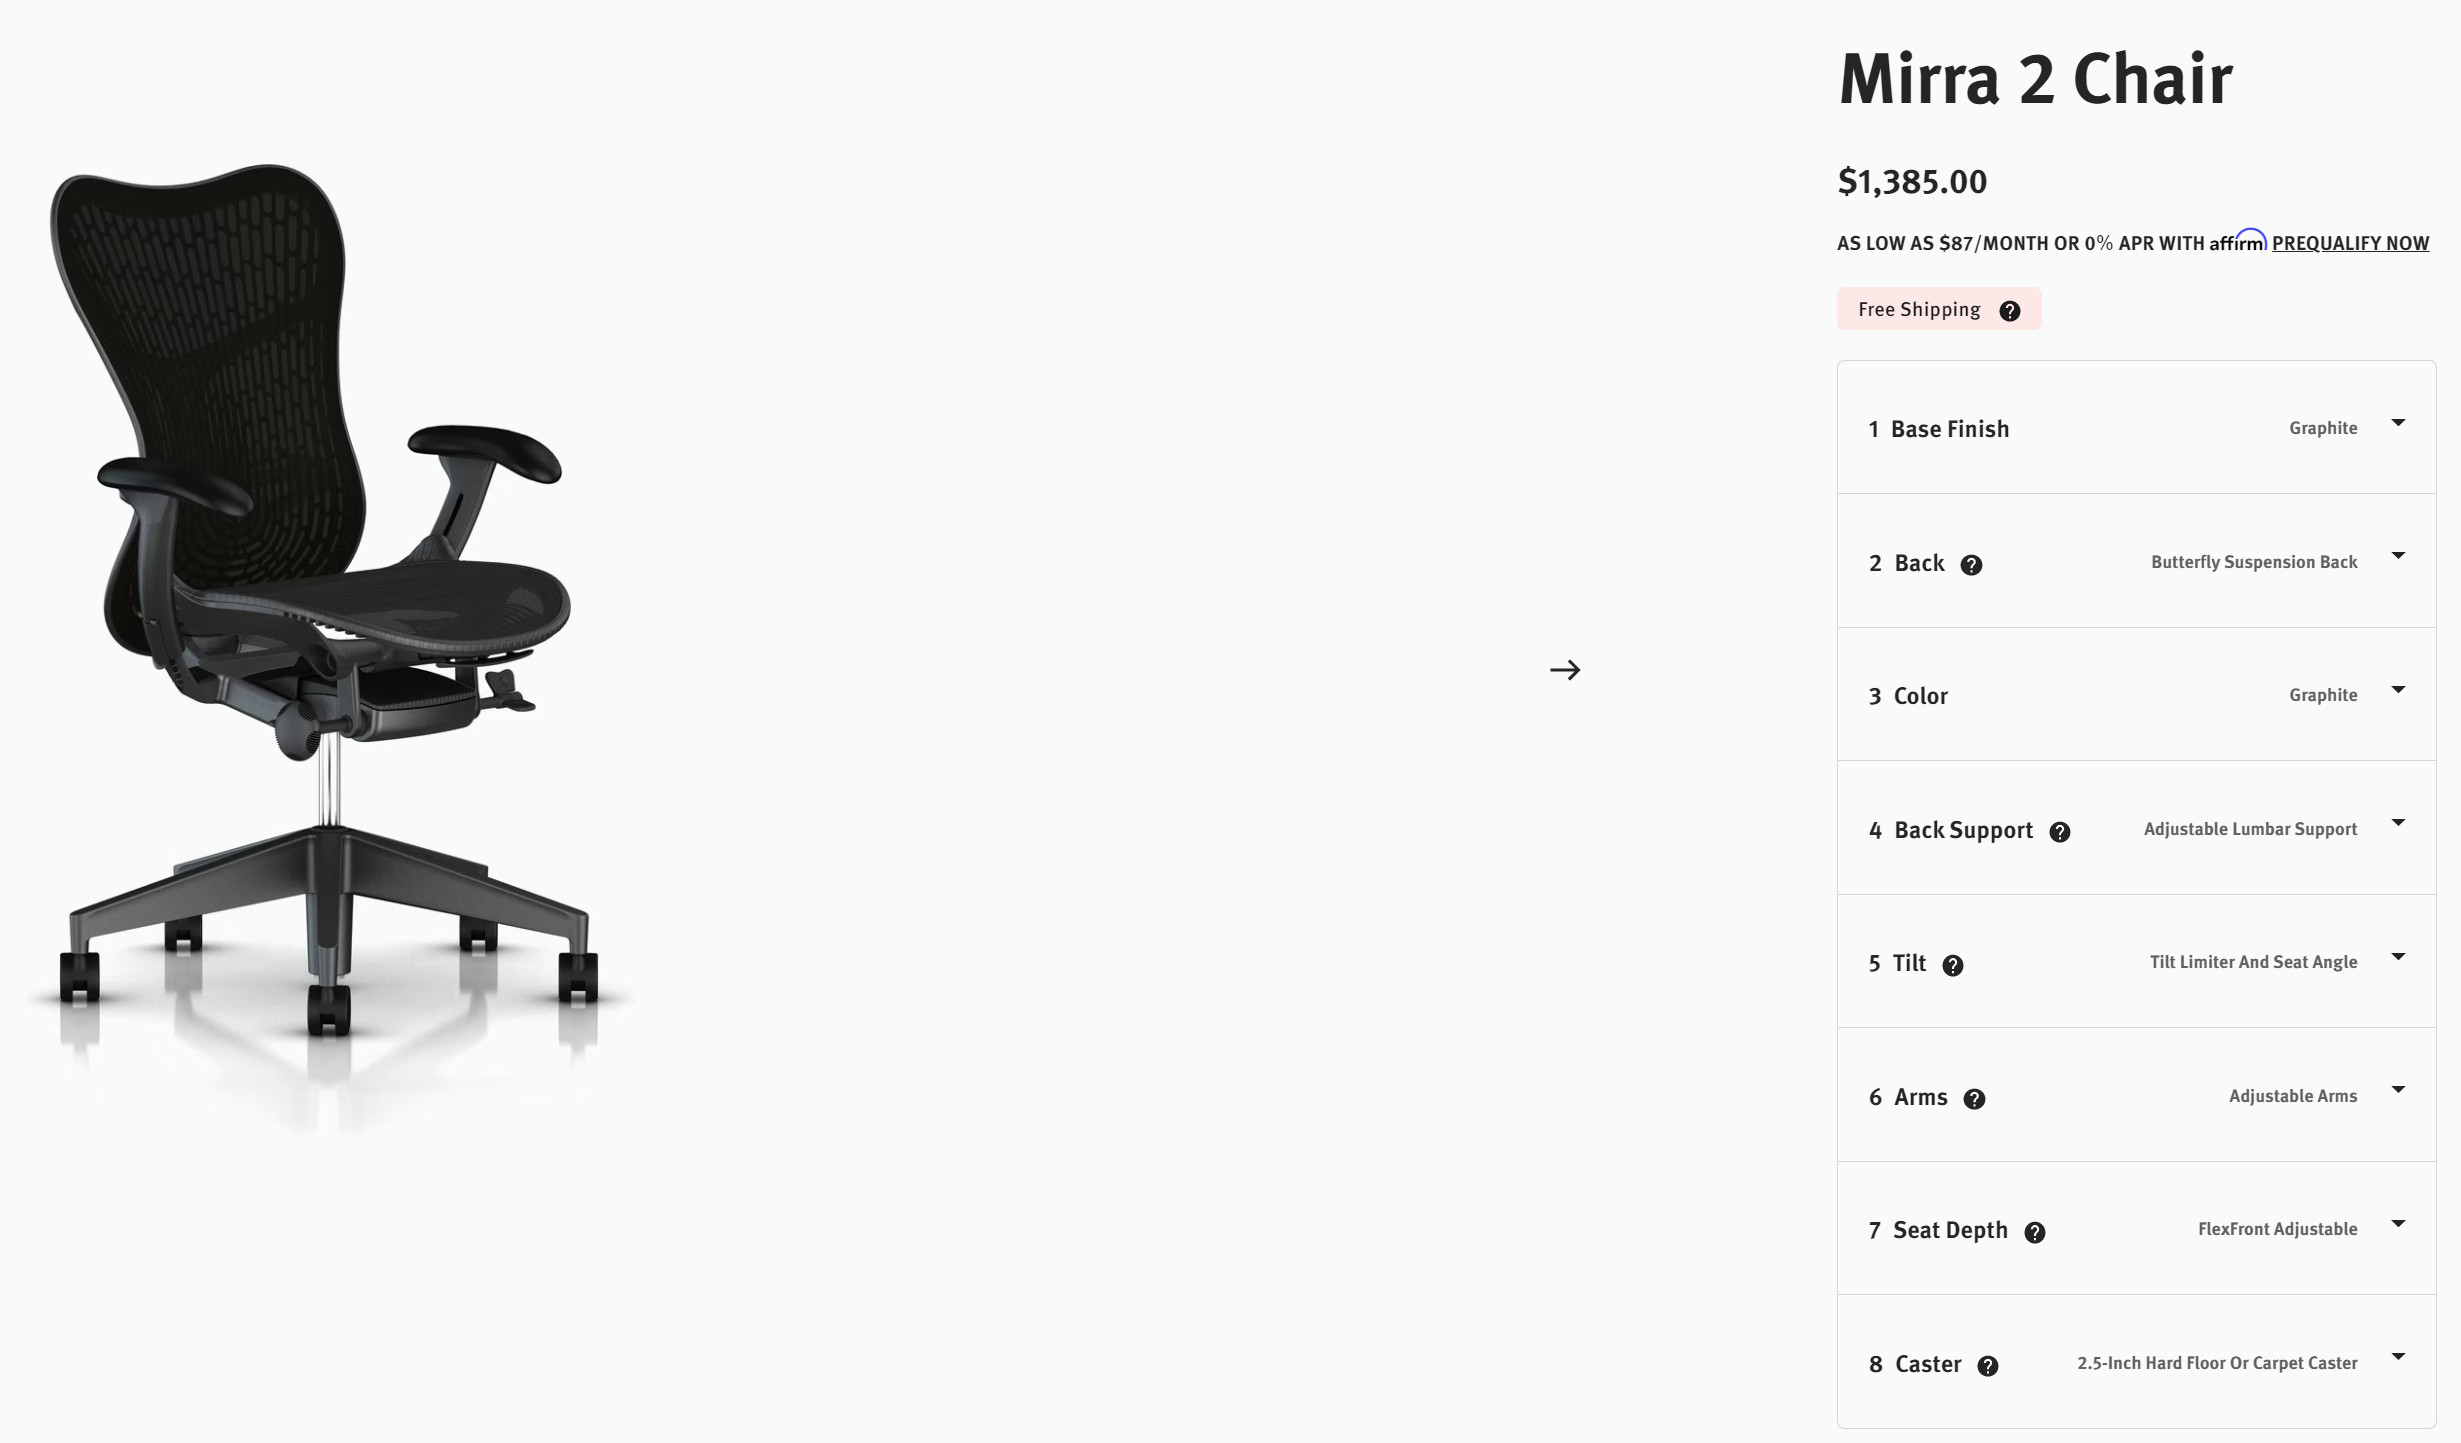 Ghế Mirra 2 màu đen Graphite full options có giá rất tốt tại DandiHome Việt Nam